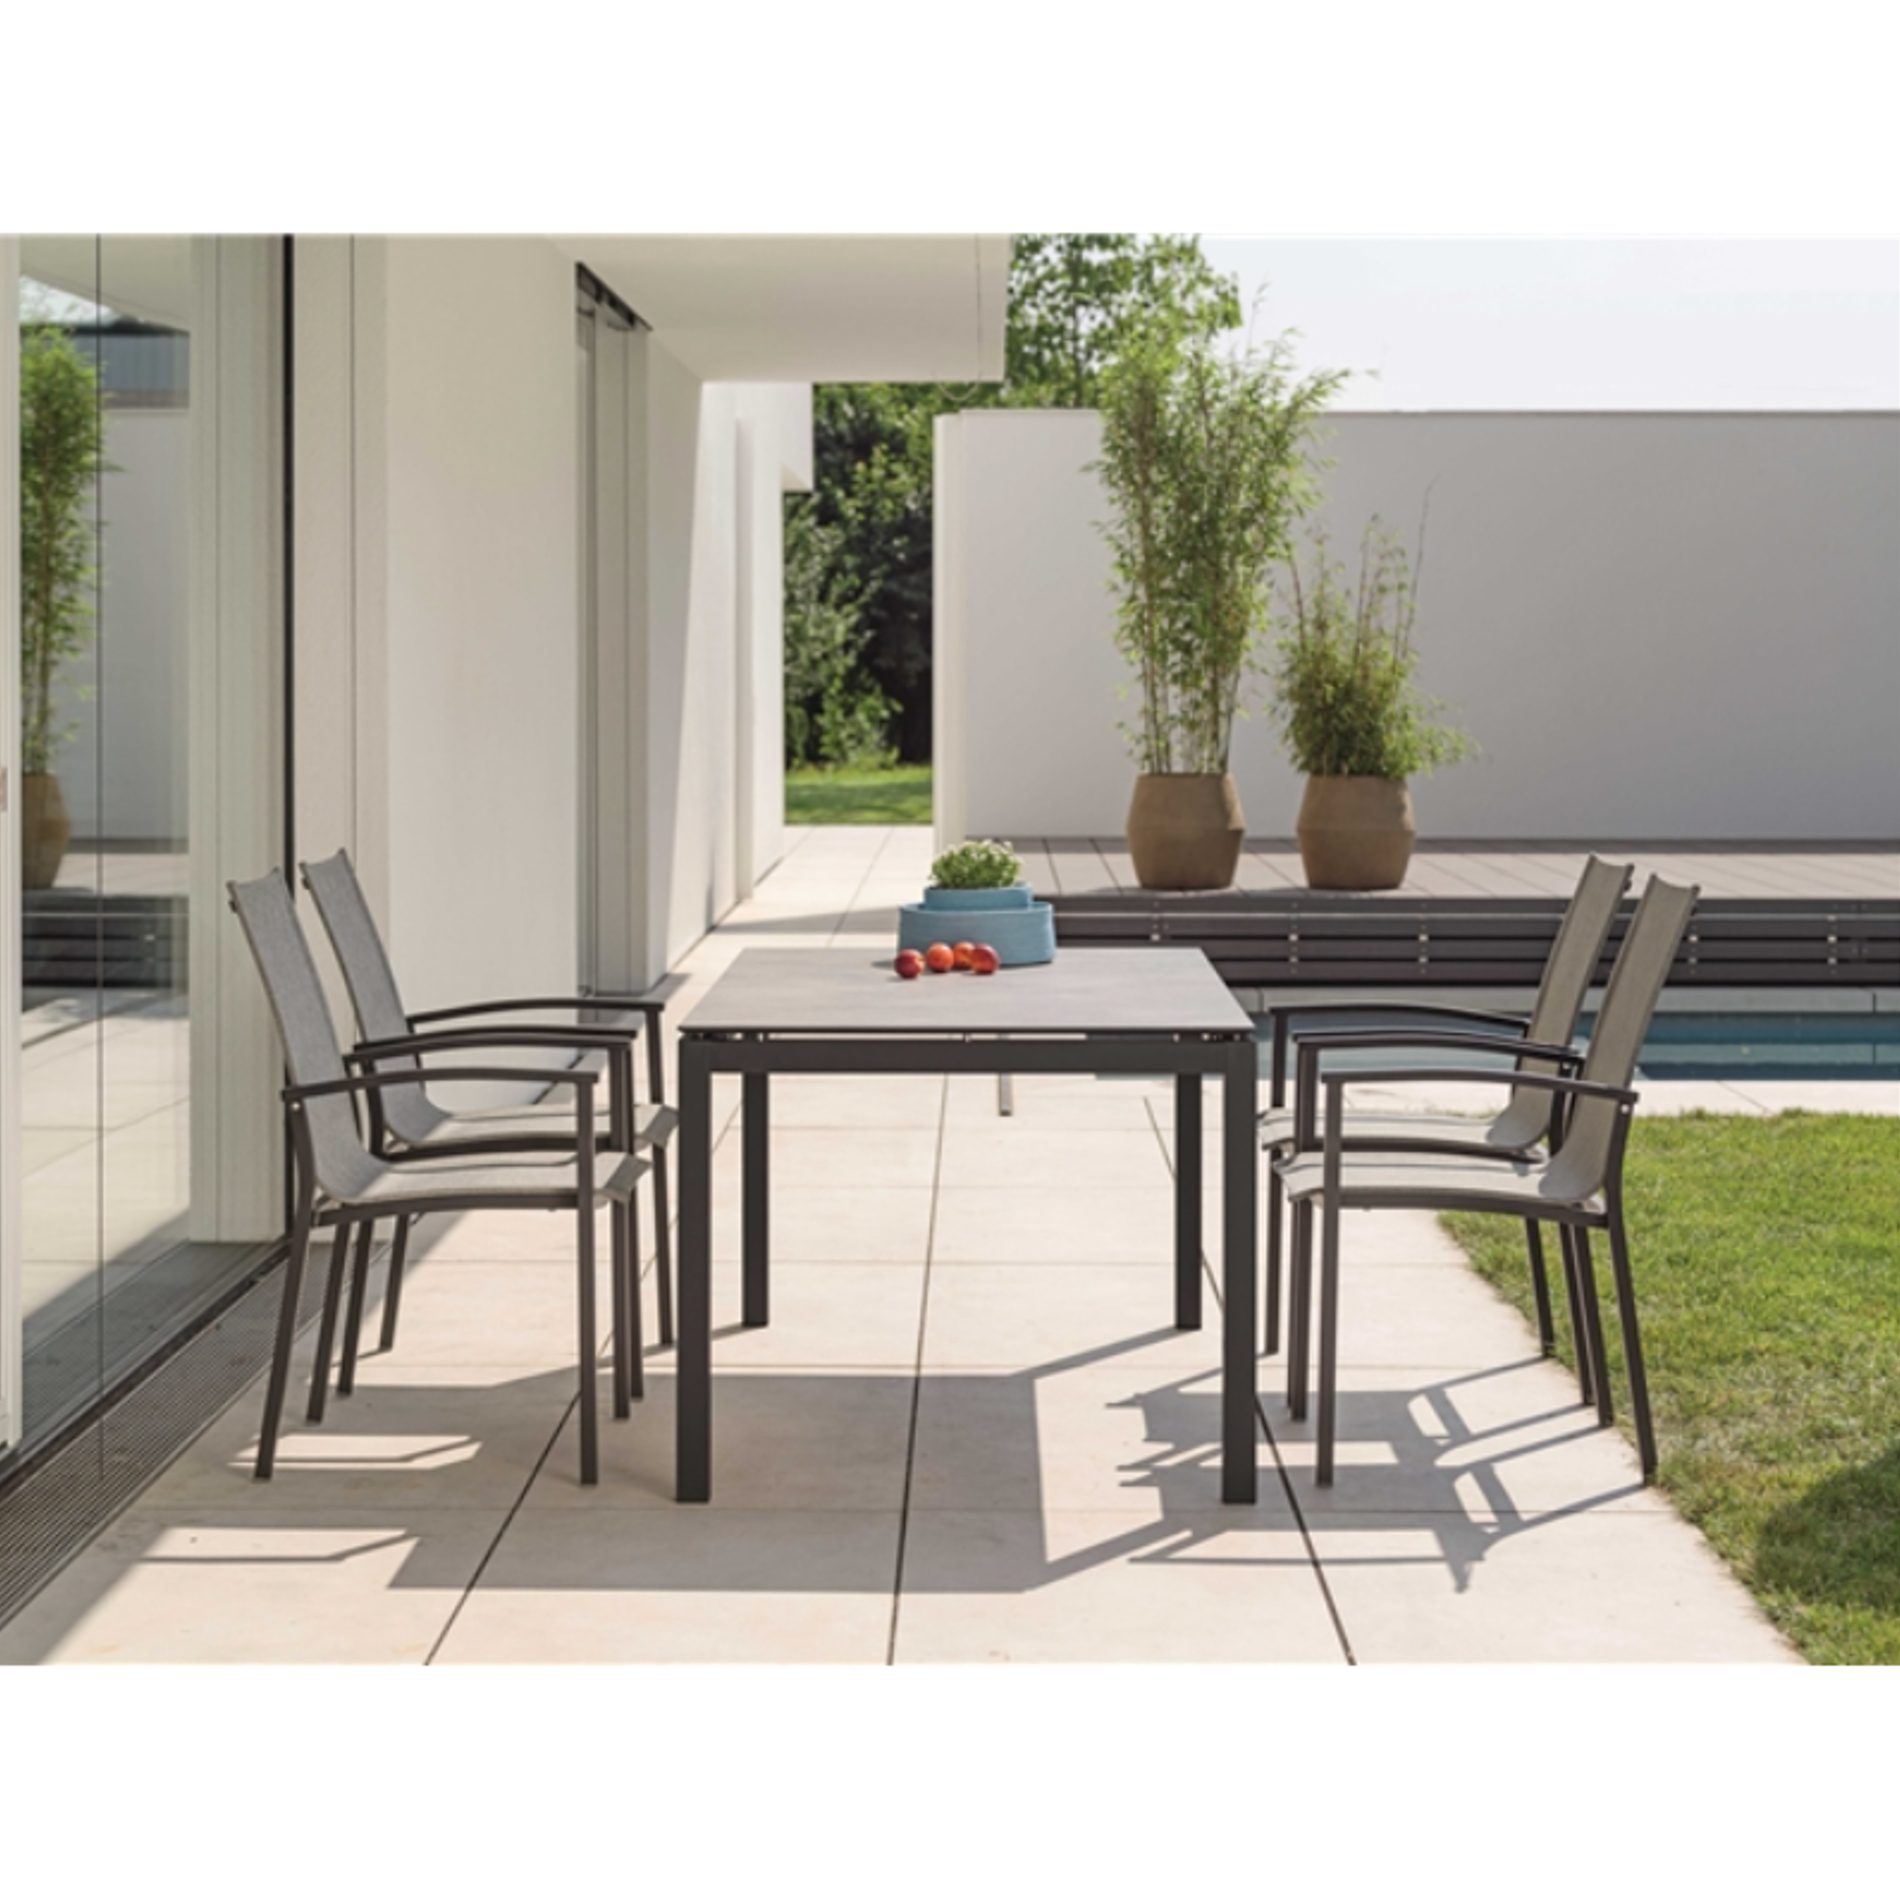 Gartenmöbel-Set mit Stapelsessel "Evoee", Textilen Leinen grau und Gartentisch 160x90 cm, HPL Vintage Stone, Gestelle Aluminium schwarz matt